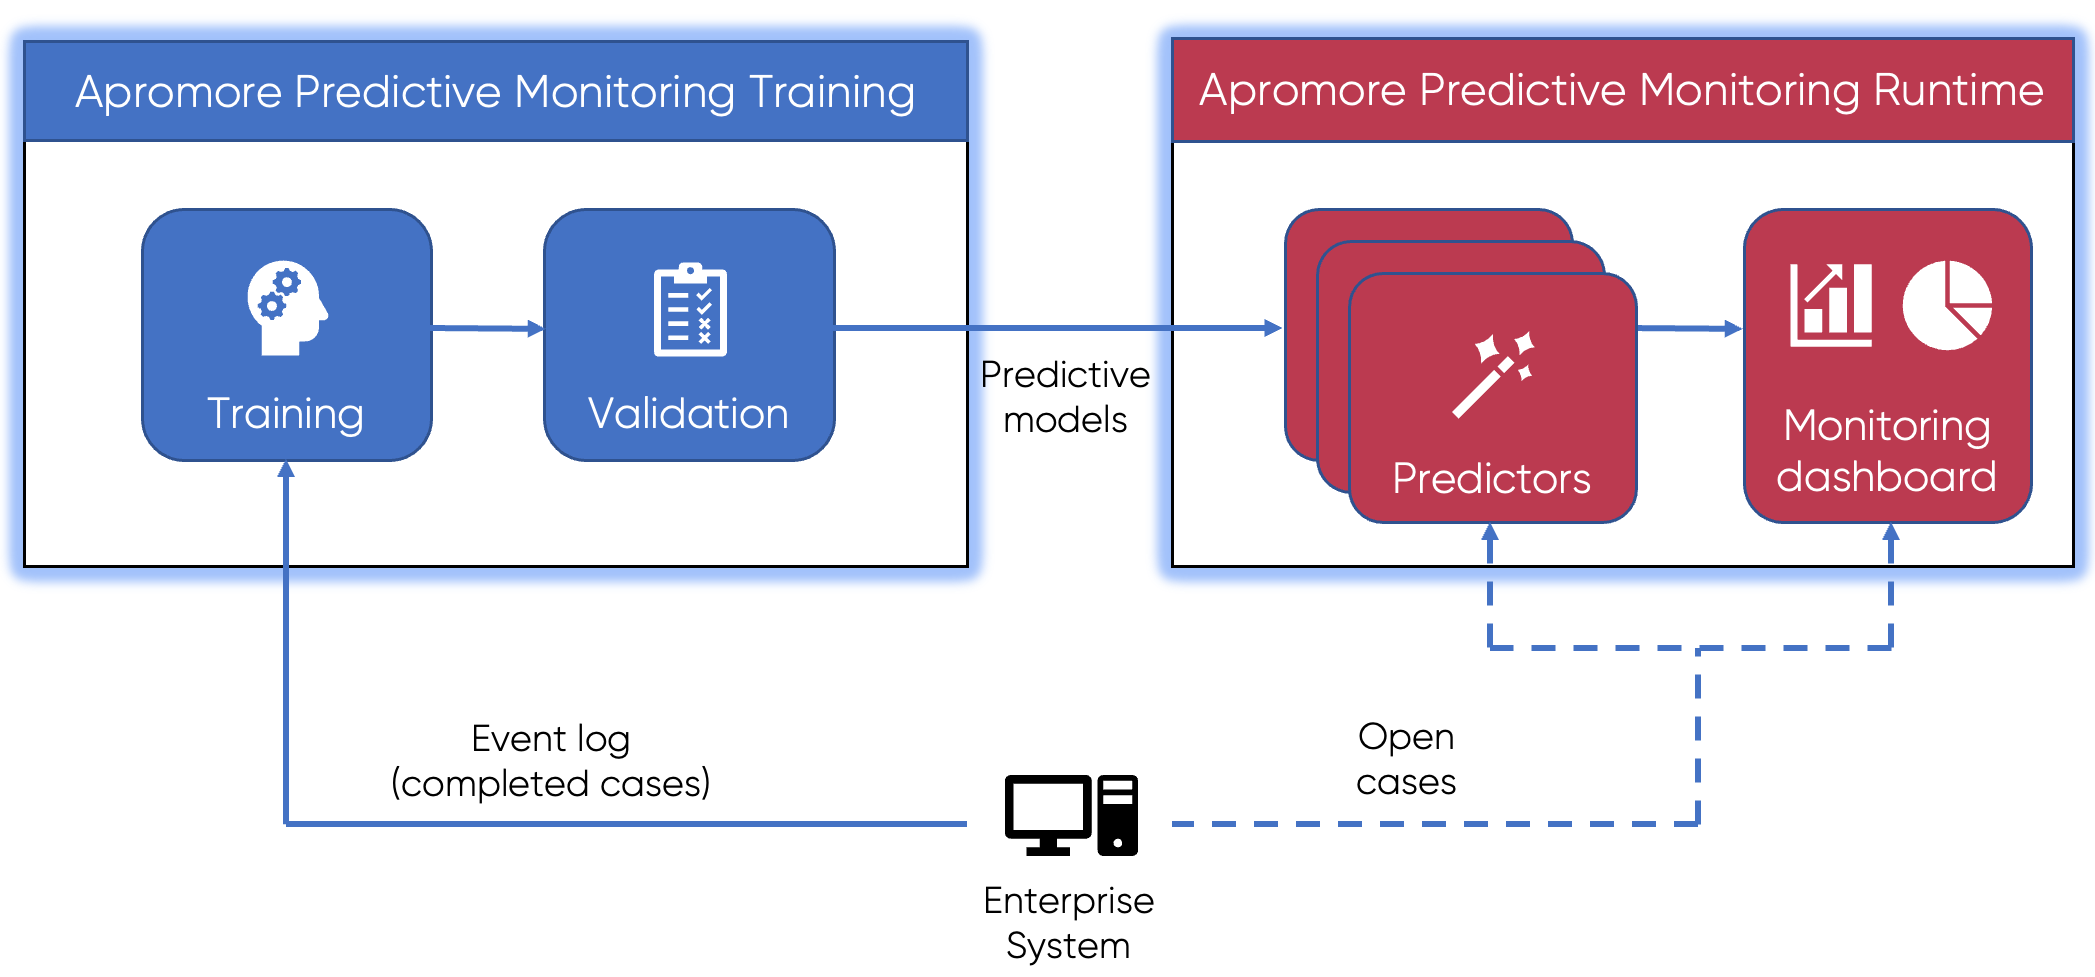 Apromore’s Predictive Process Monitoring